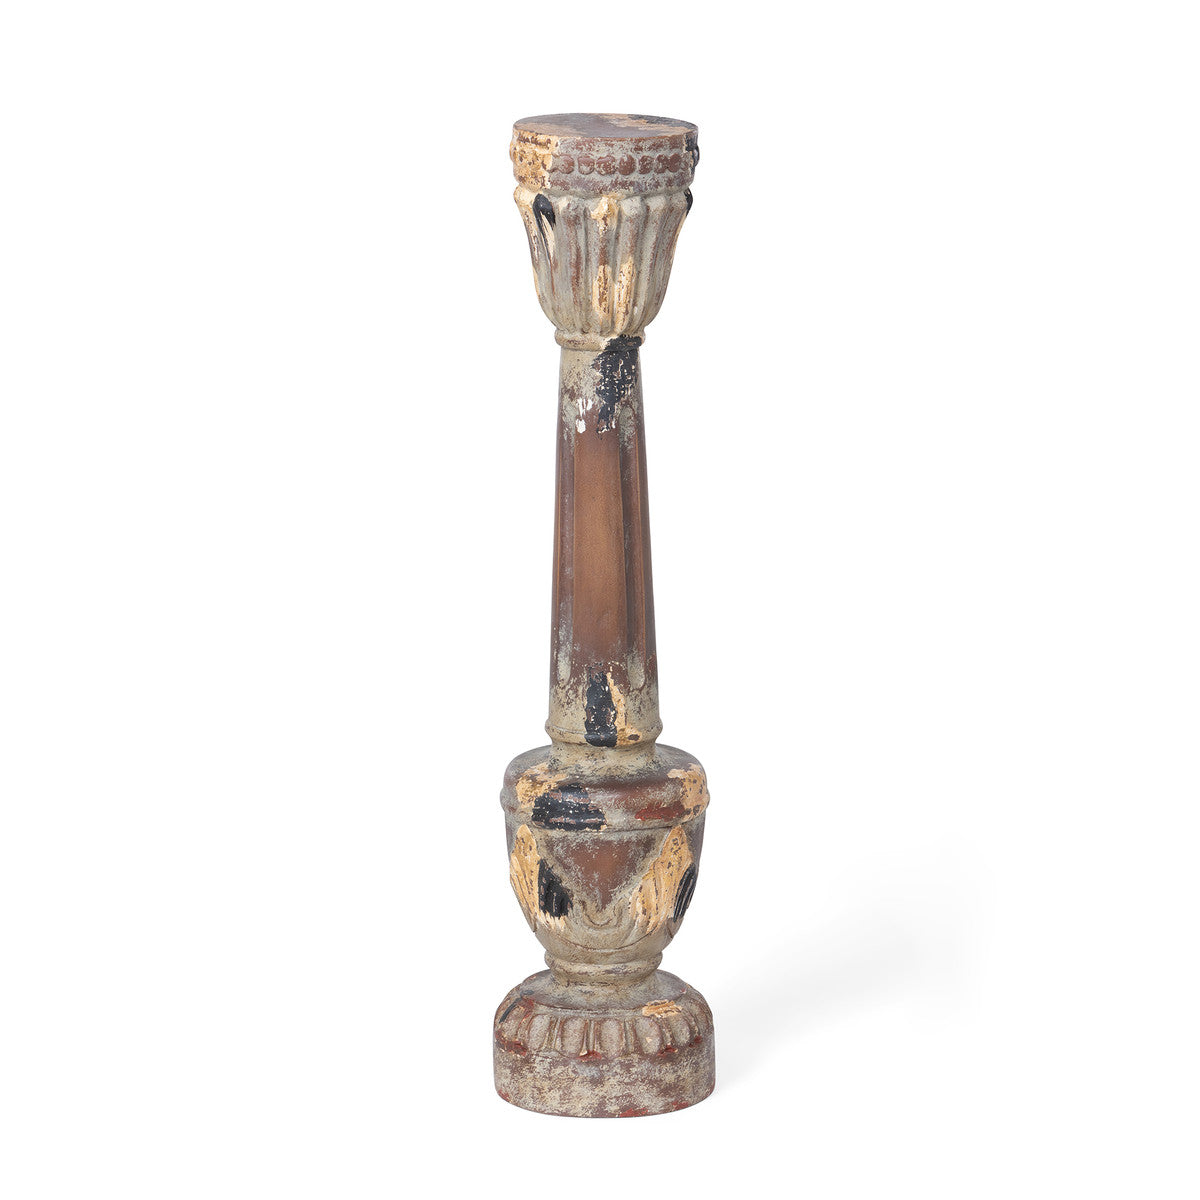 Delgado Carved Wood Candle Holder - 24"